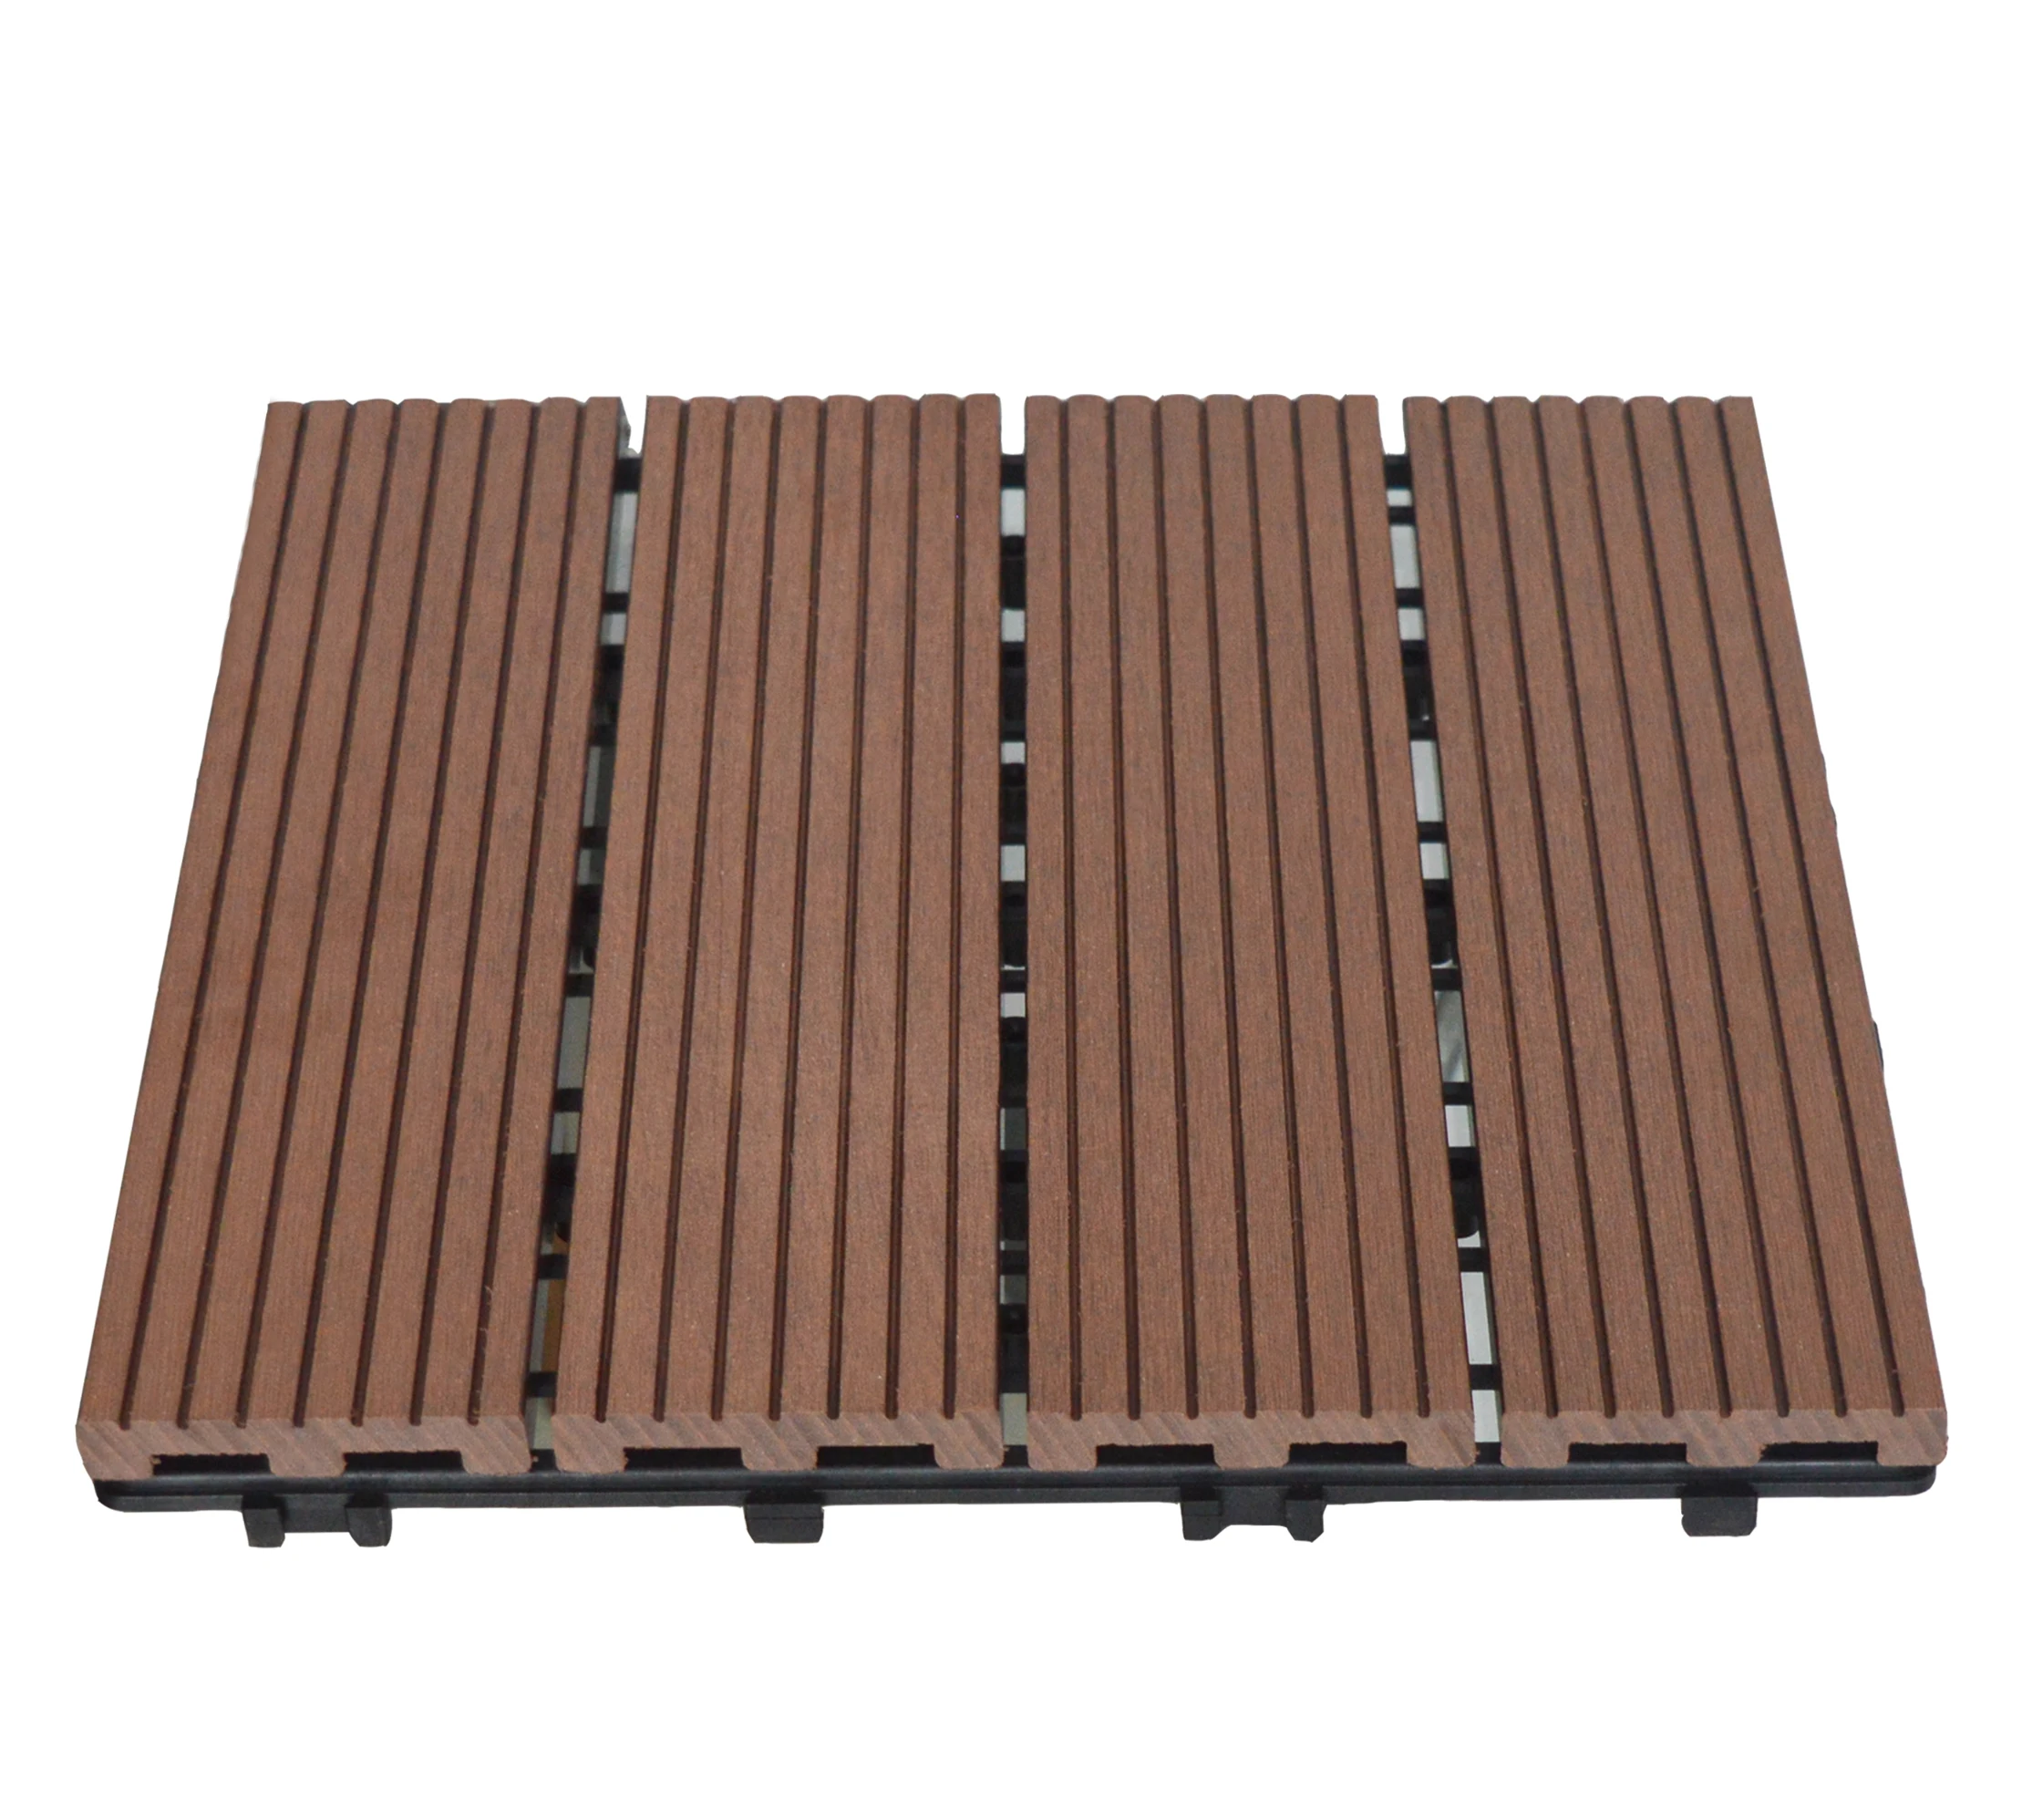 SIENOC WPC DIY teja la corrosión anti del suelo al aire libre compuesto plástico de madera 30x30 cm, 22 piezas Marron oscuro